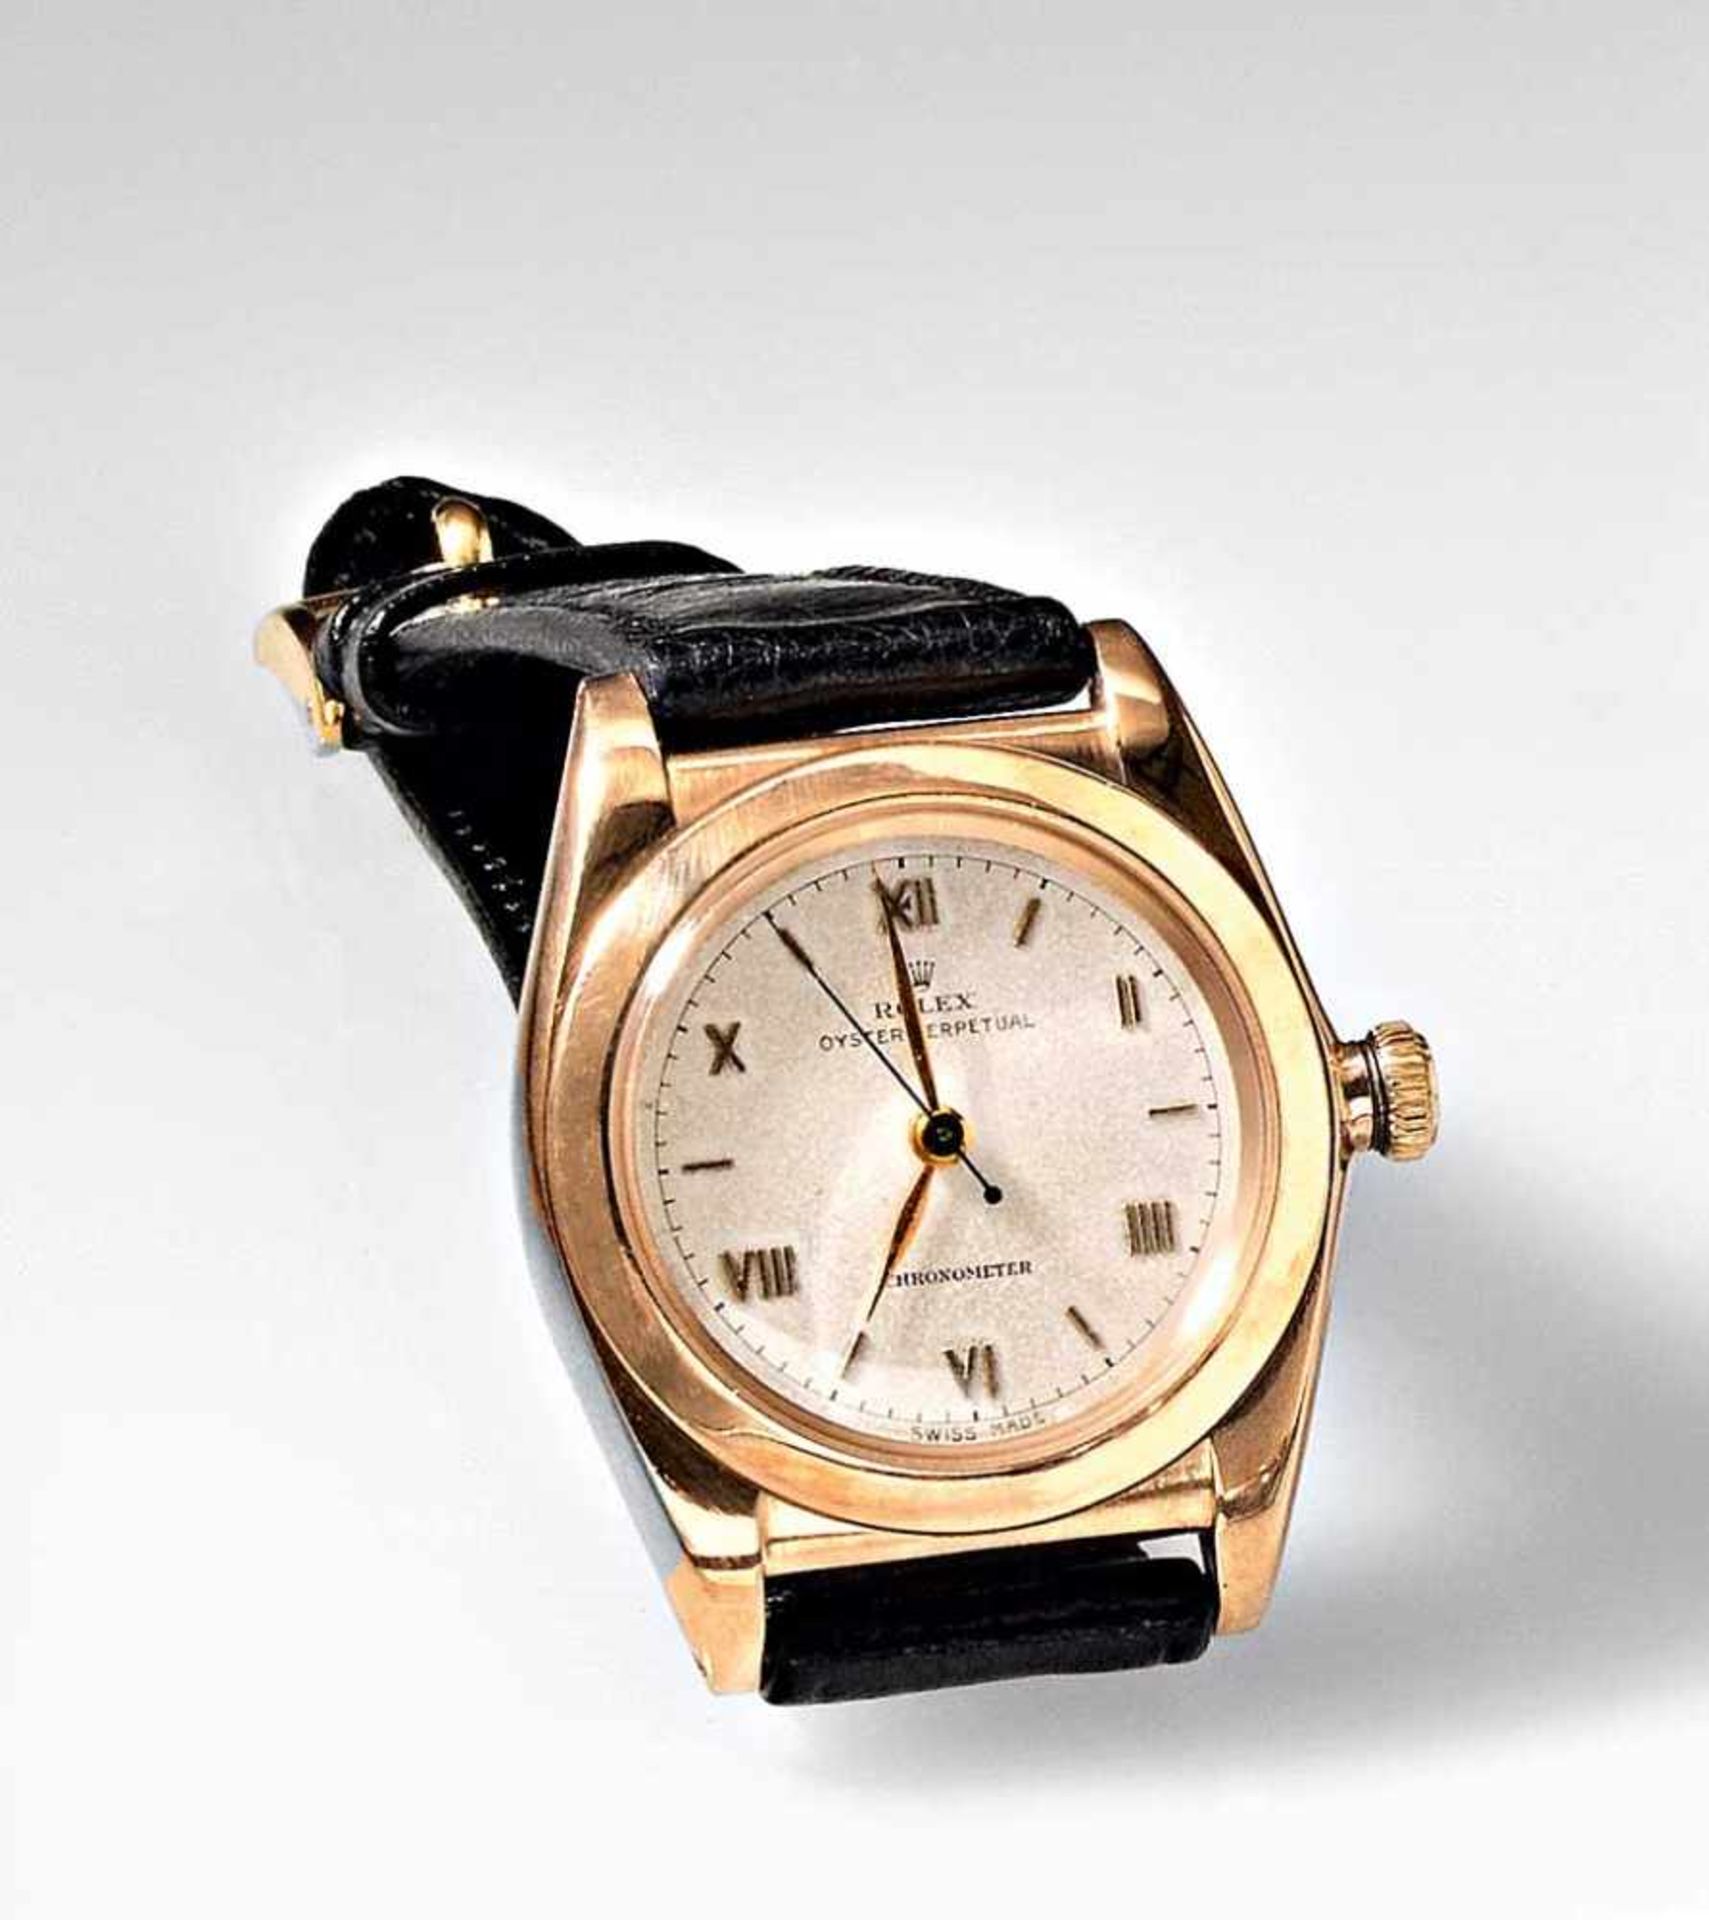 Seltene goldene Rolex Oyster Perpetual Chronometer-Herrenarmbanduhr, sog. "Bubble Back". Ref.